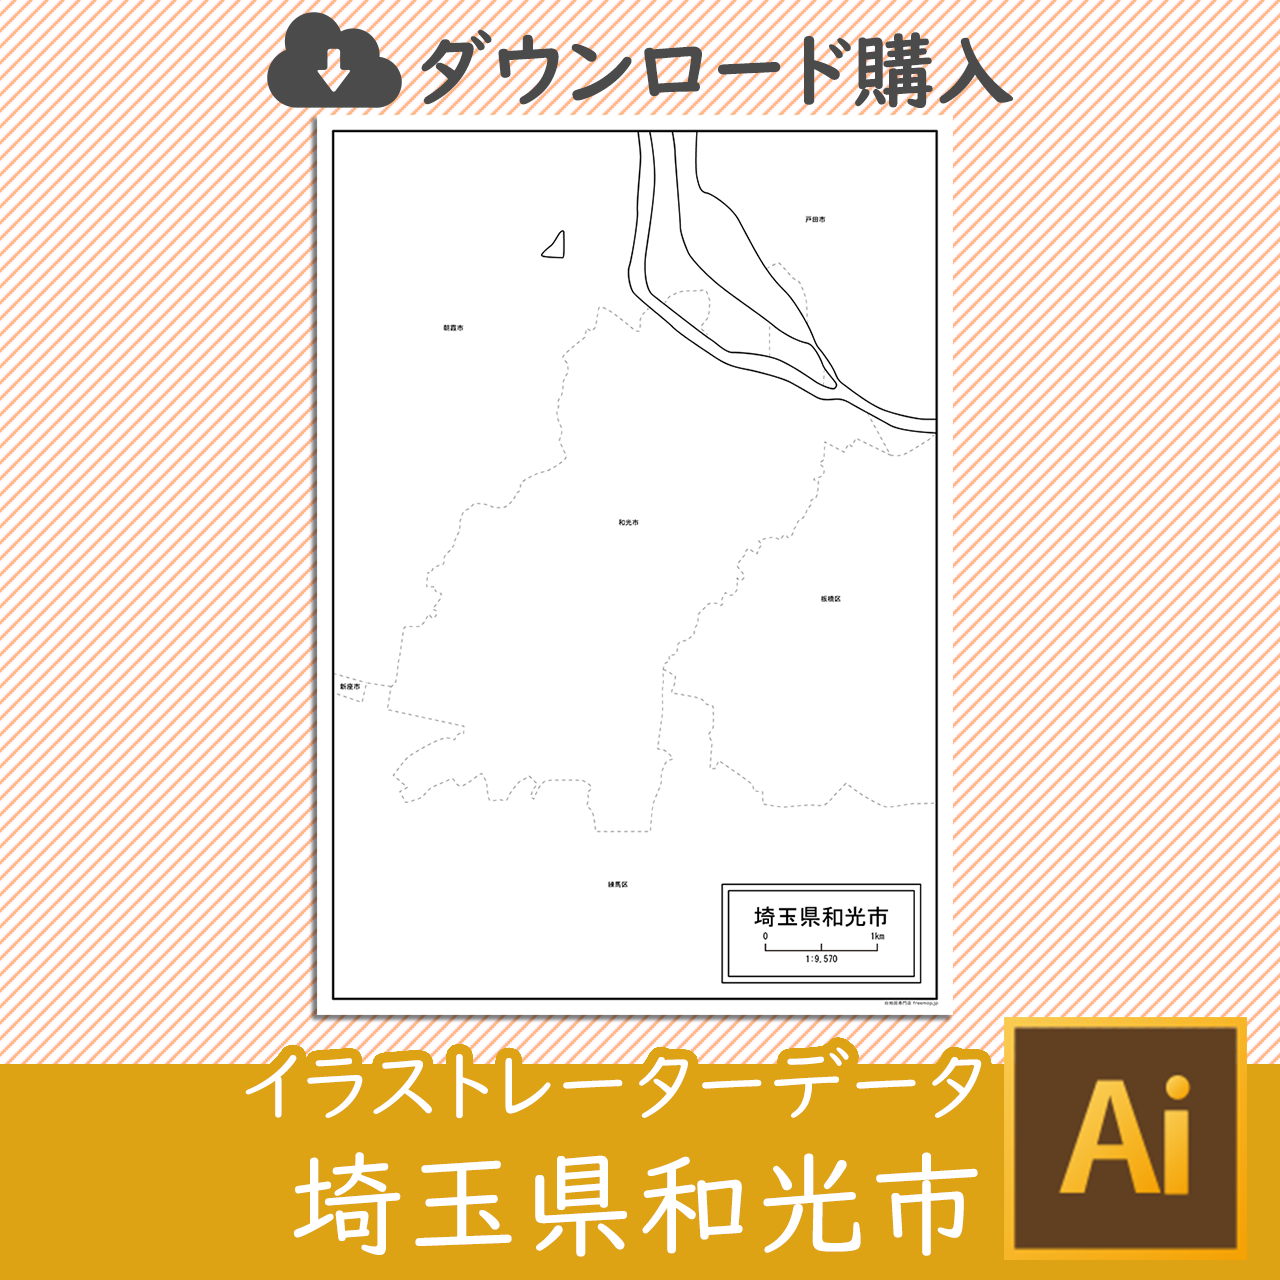 和光市のaiデータのサムネイル画像